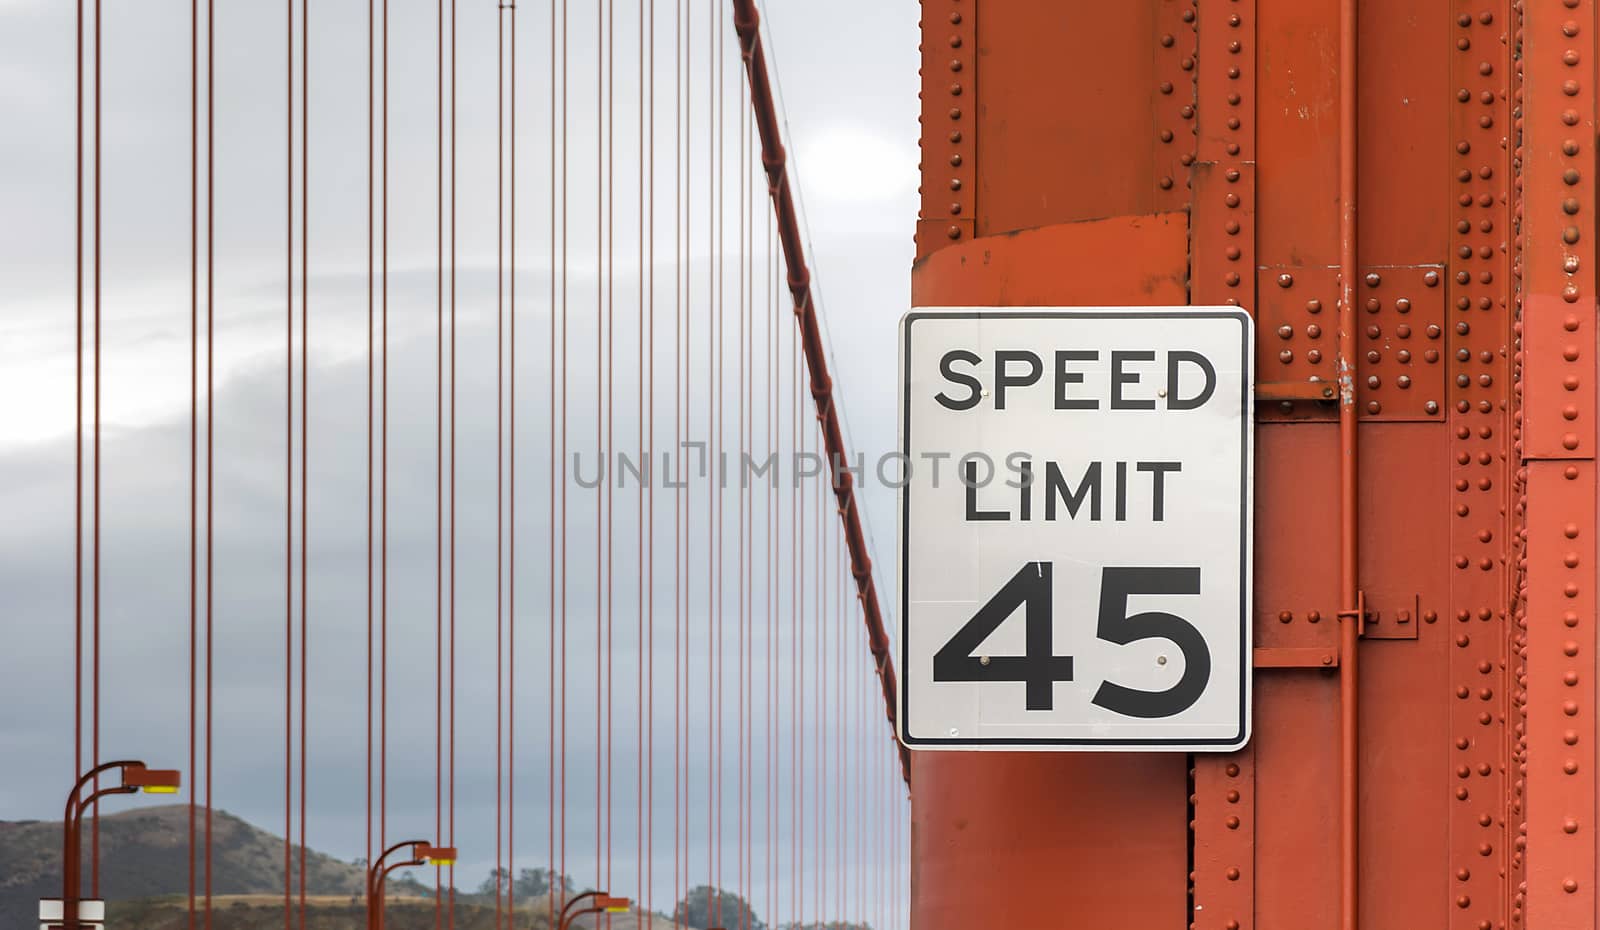 Speed limit sign on Golden Gate Bridge by rarrarorro